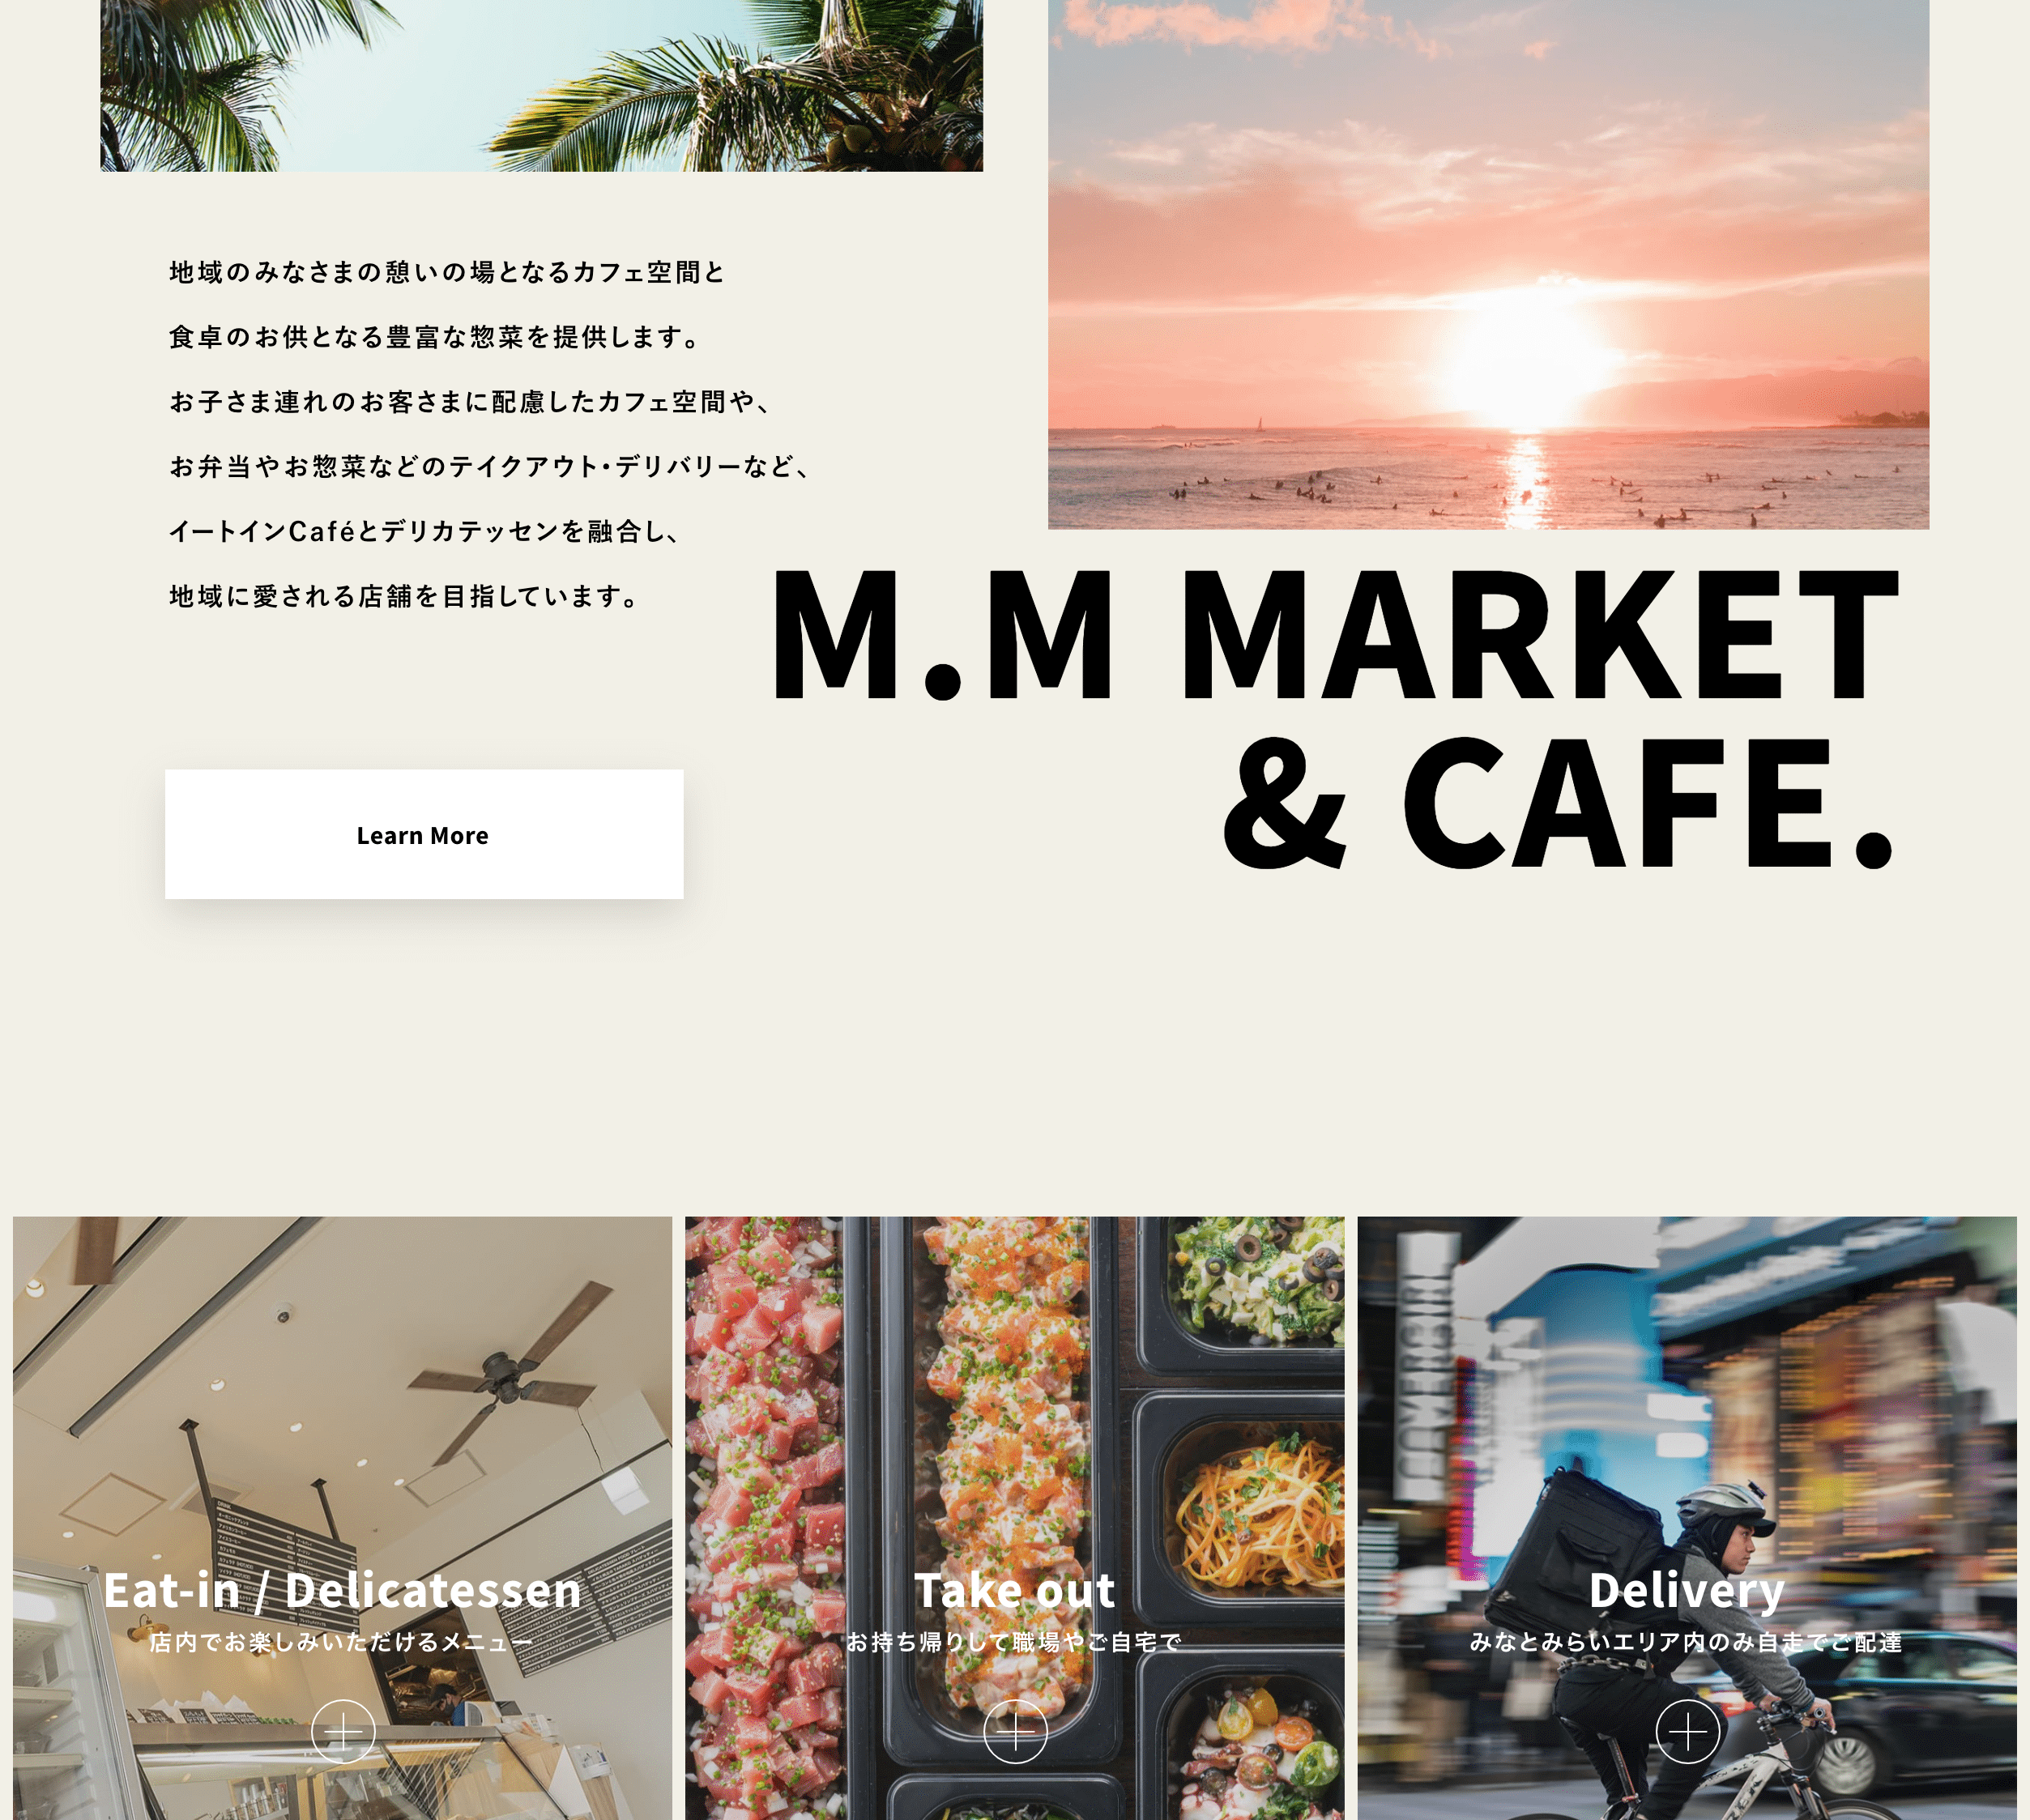 mm-market咖啡馆网站设计